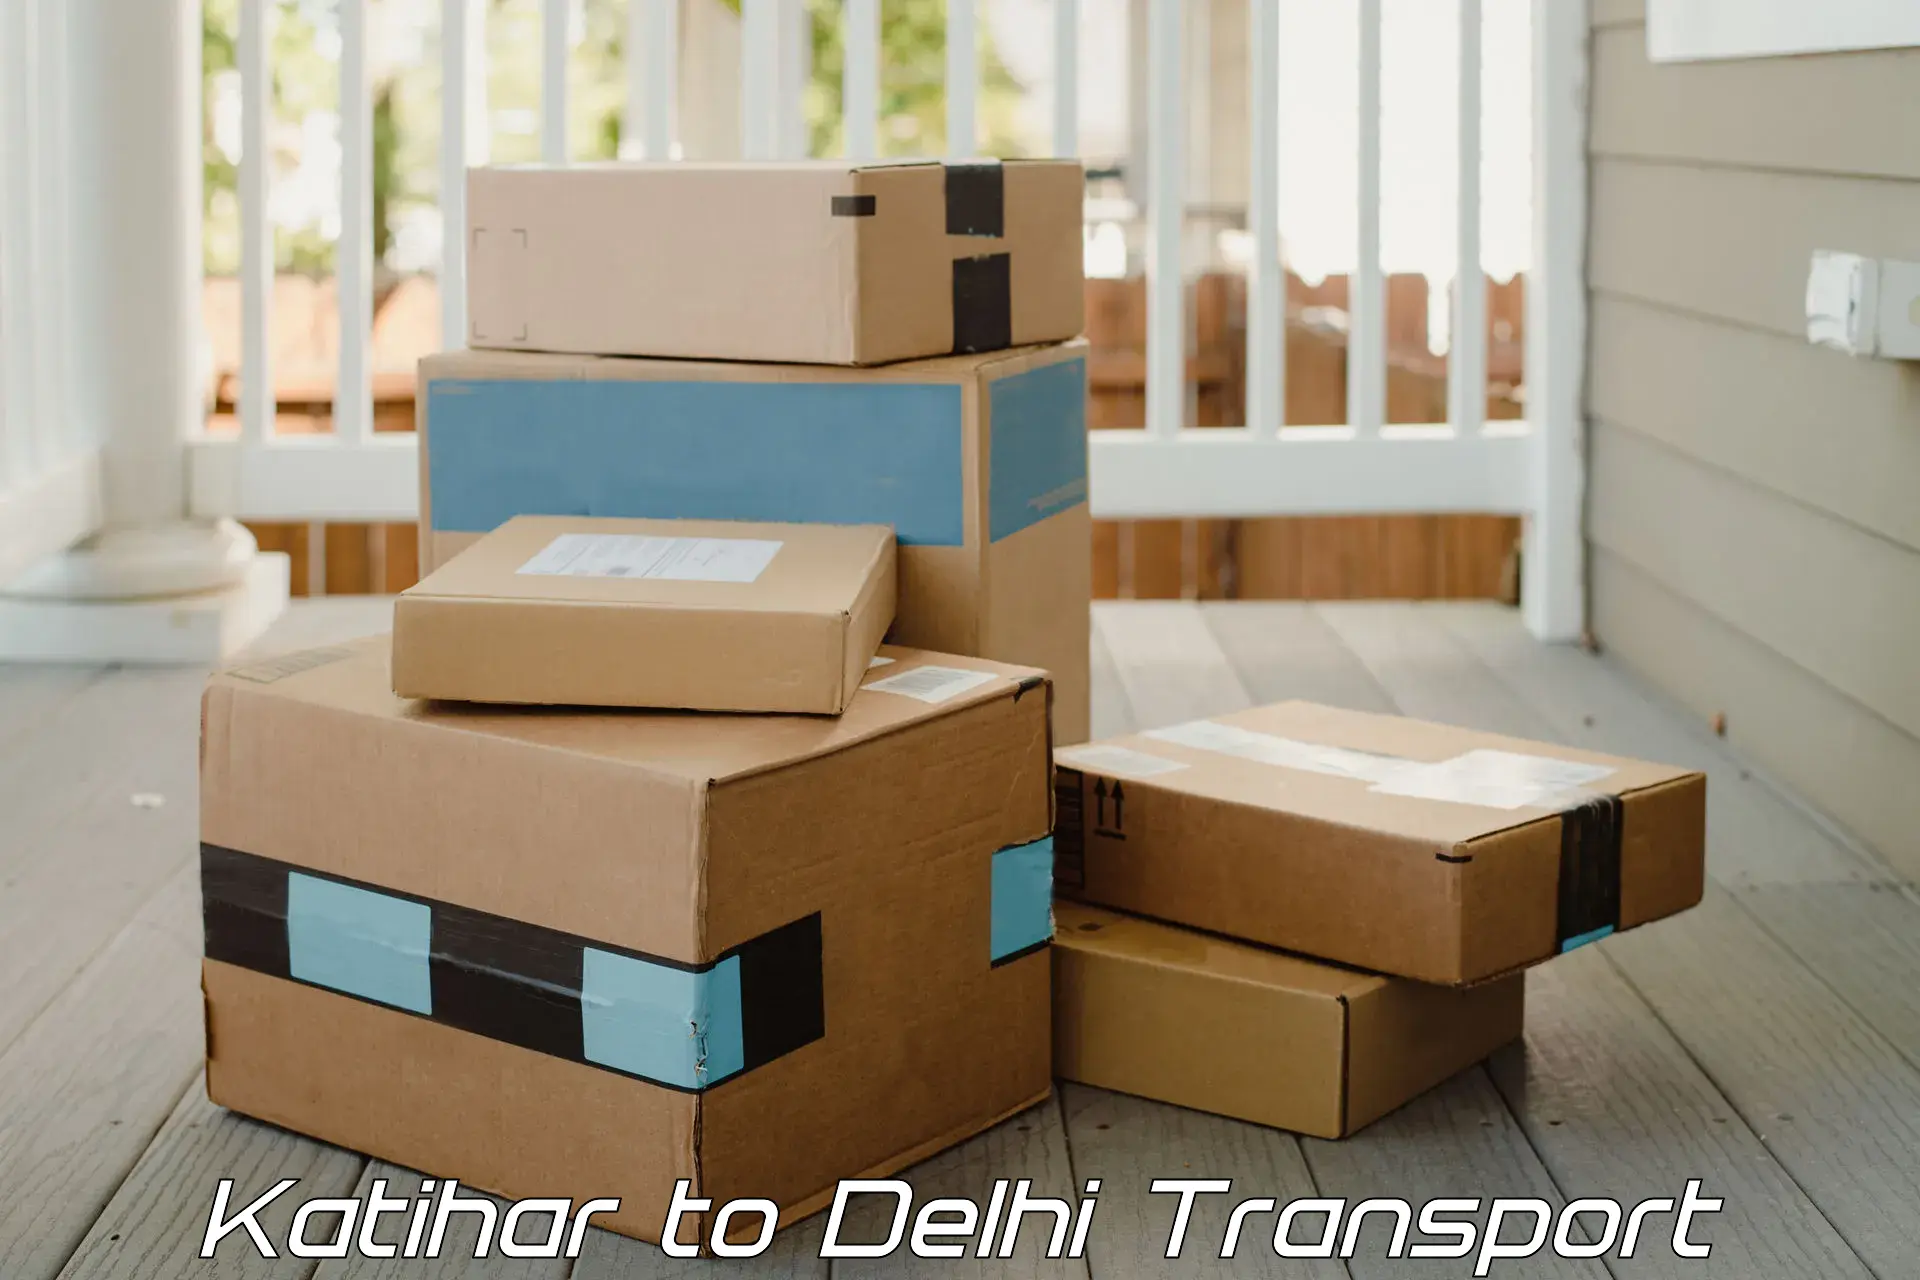 All India transport service Katihar to Jamia Hamdard New Delhi